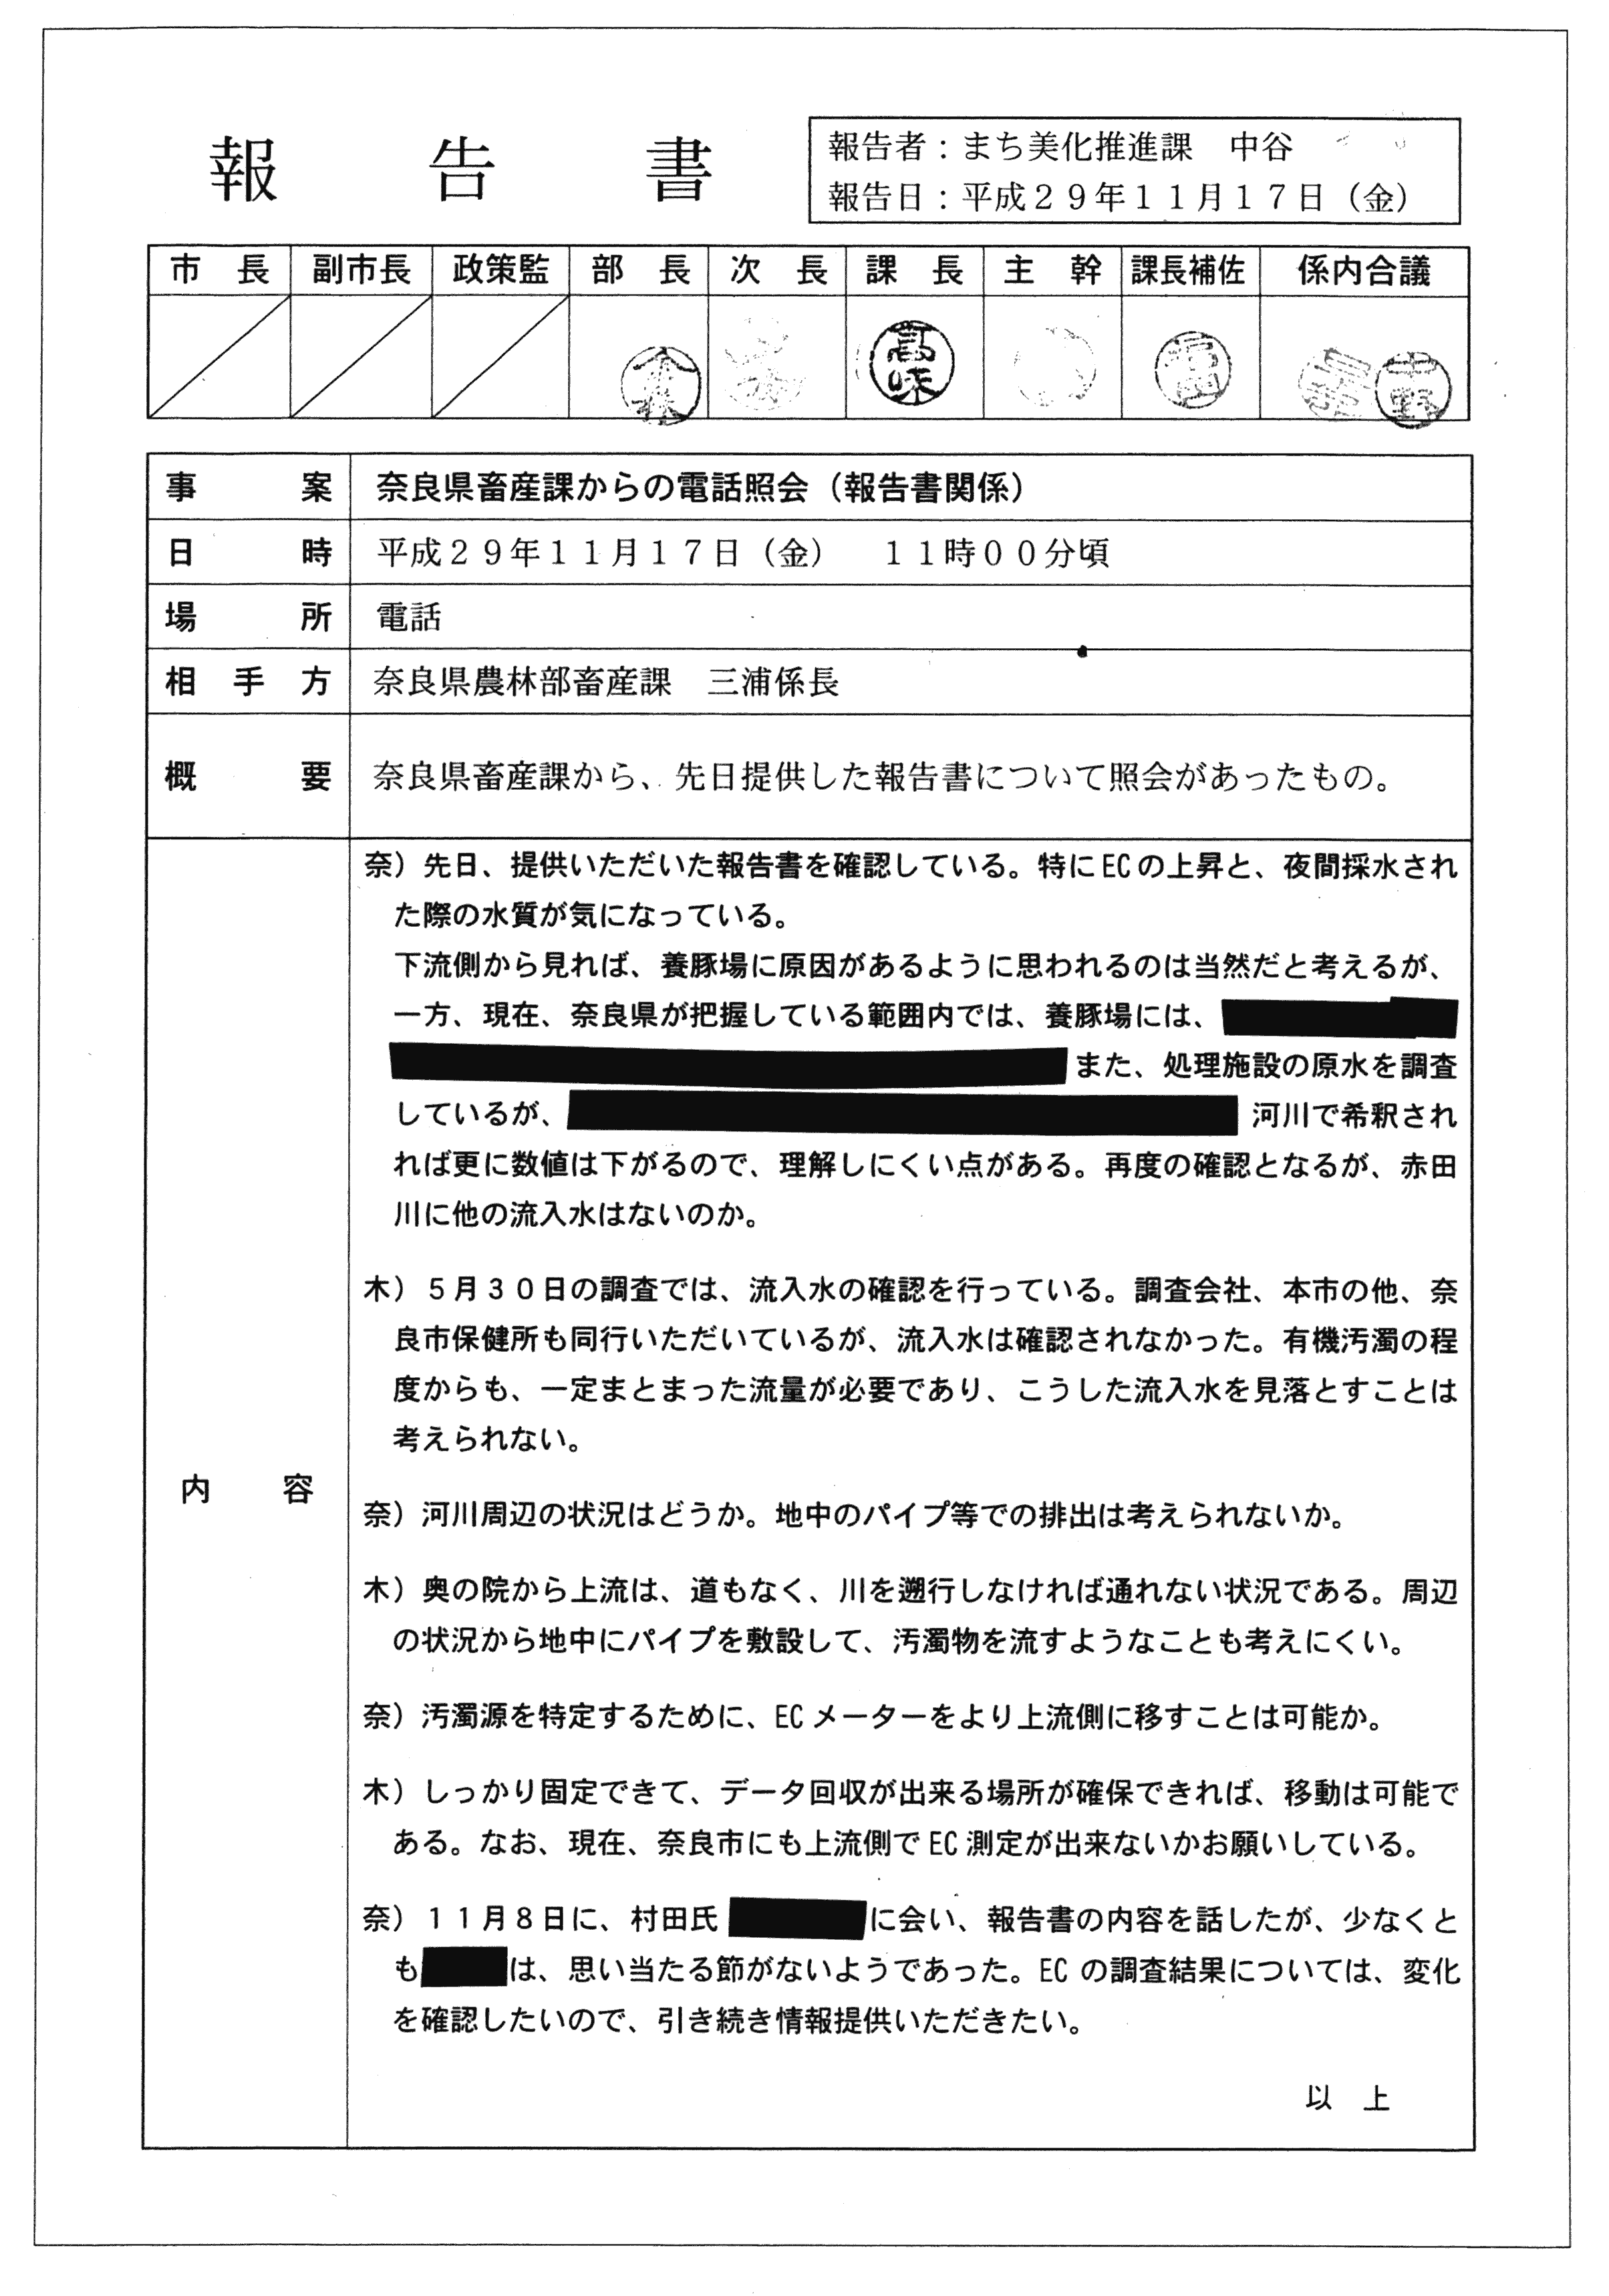 平成29年11月17日-奈良県畜産課からの電話照会（報告書関係）